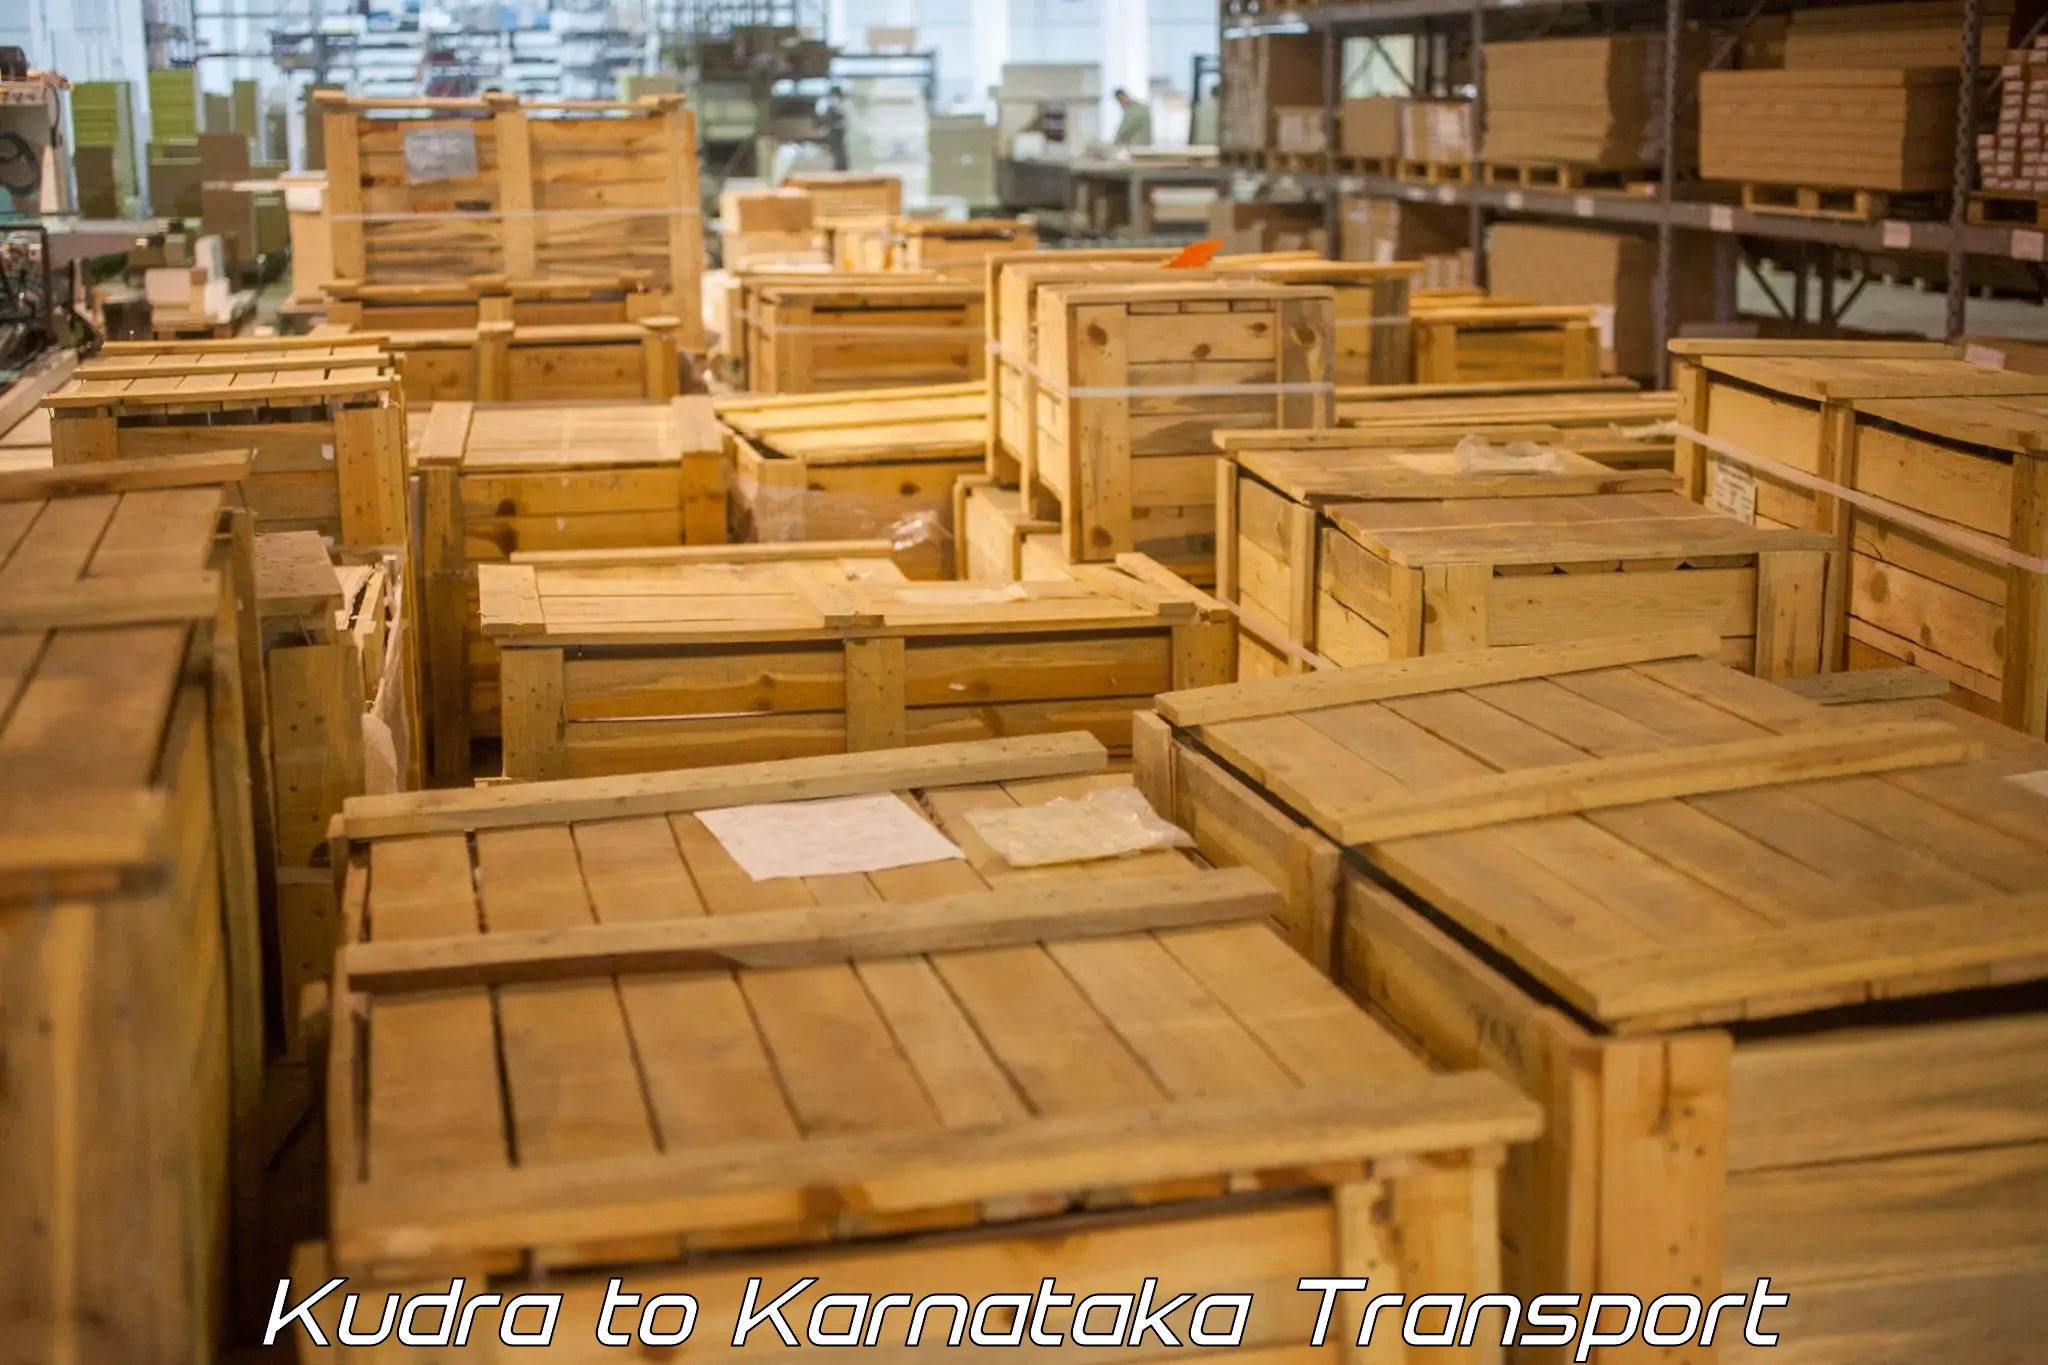 Container transport service Kudra to Kalasa